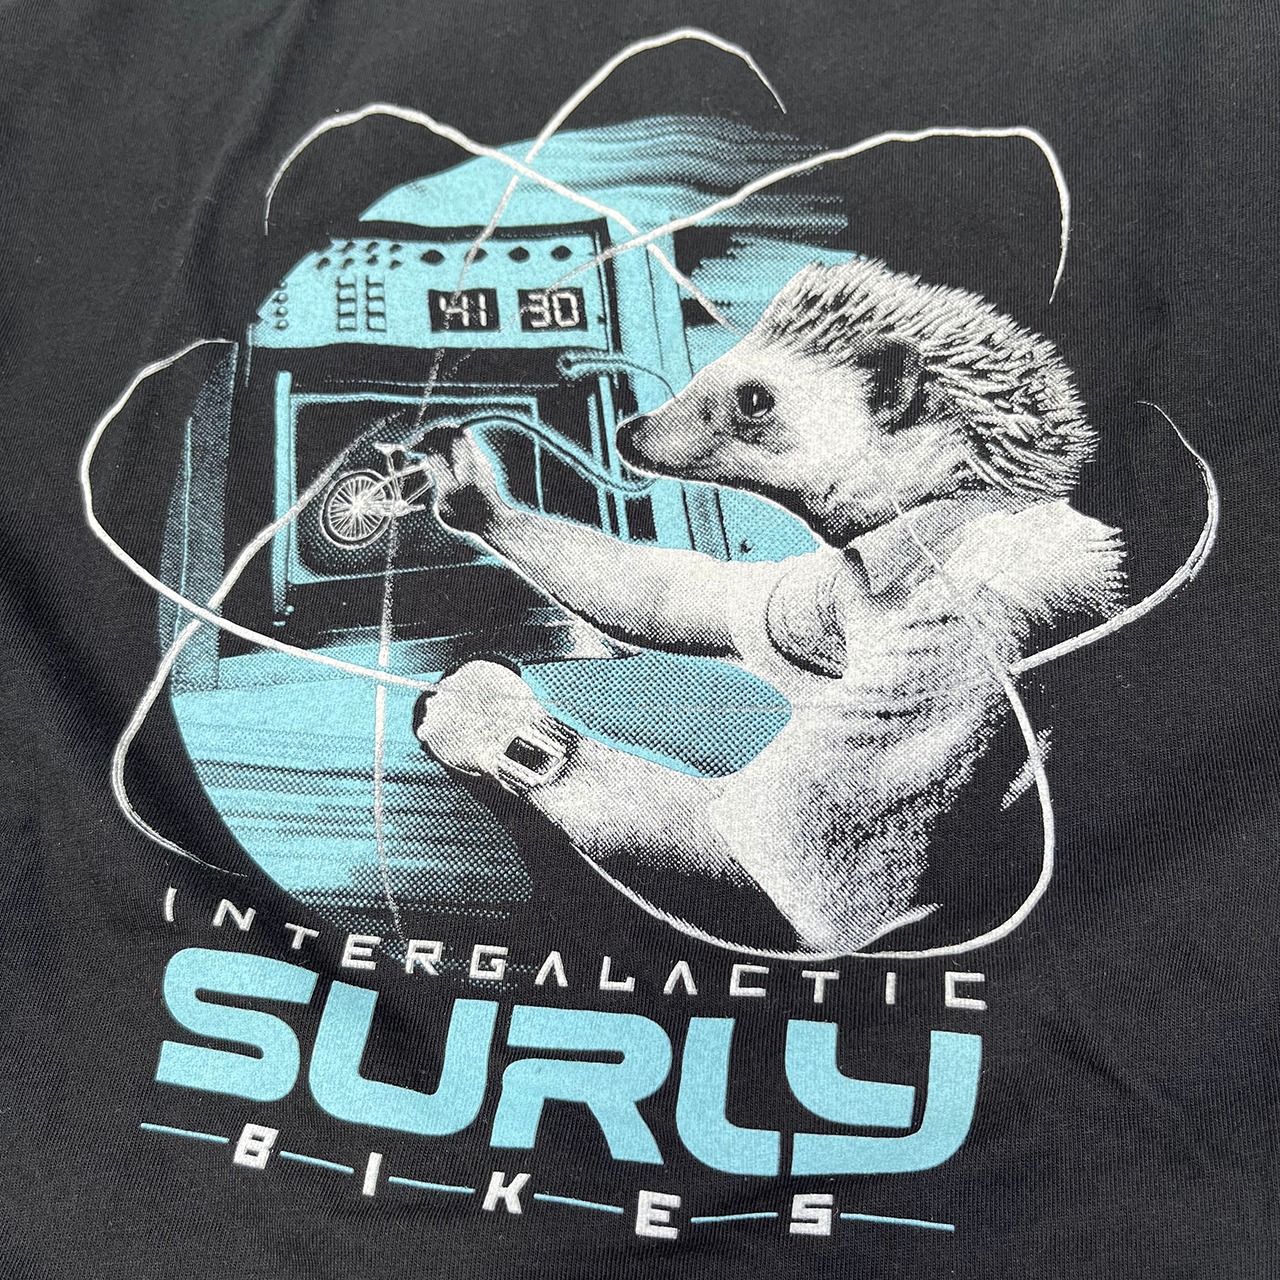 SURLY ｜ Garden Pig T-Shirt